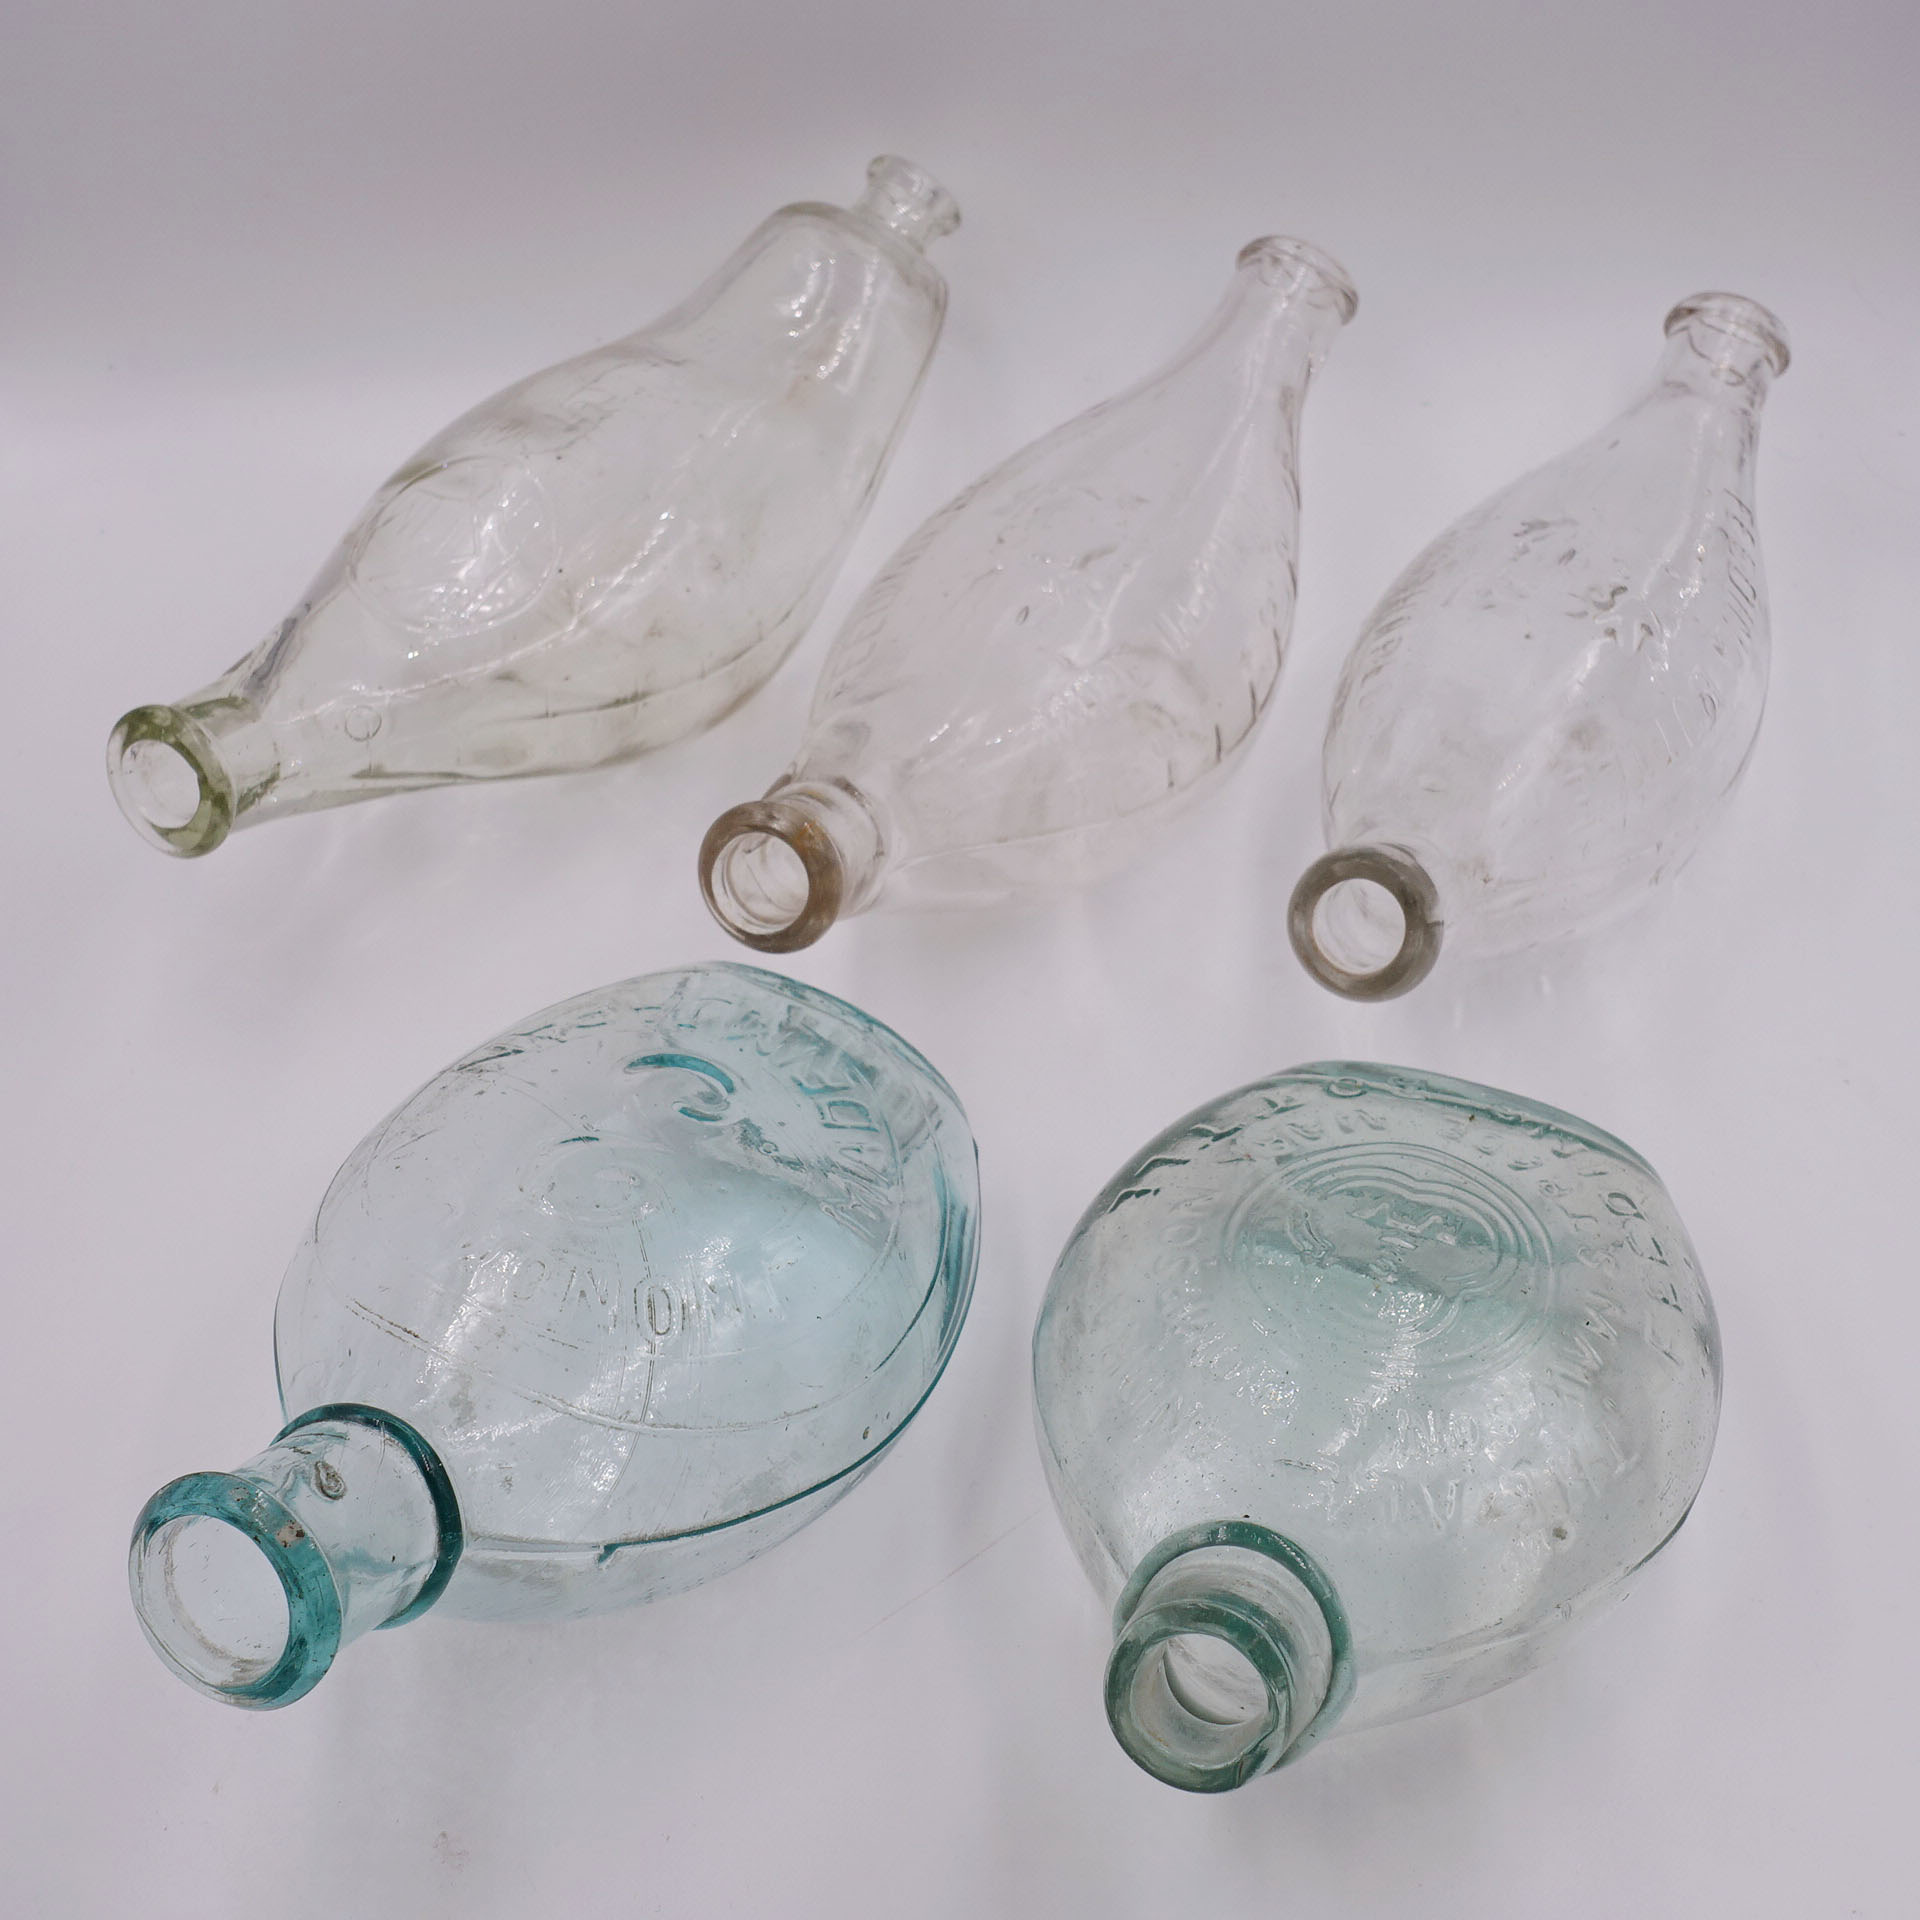 50年代古董玻璃瓶 中国上海日本等多款选玻璃古董奶瓶装饰摆件